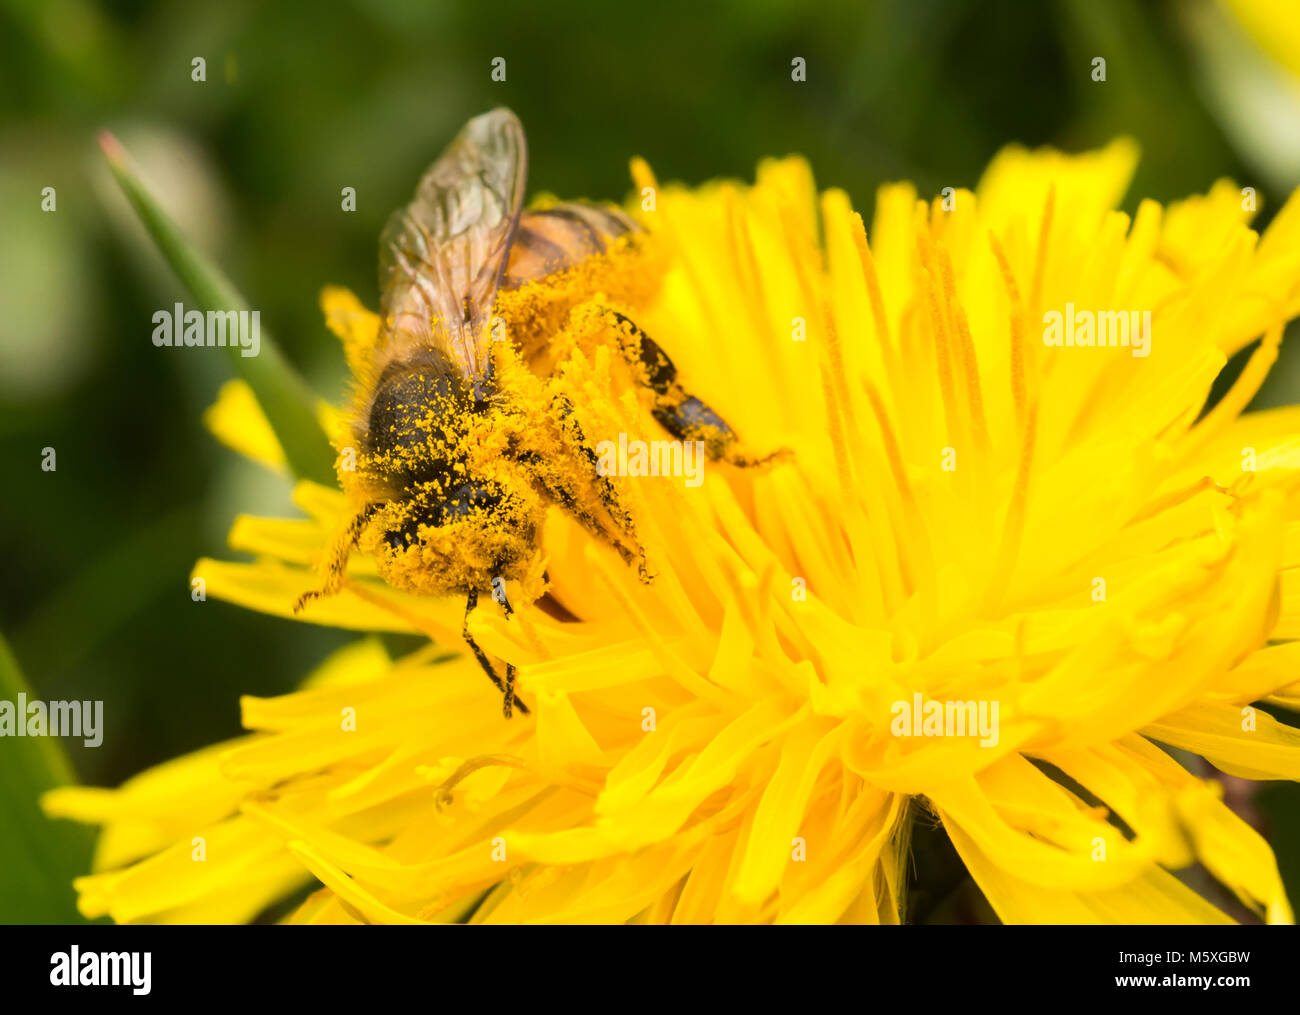 Abeille domestique (Apis mellifera) couvert de pollen, se nourrissant de pollen et la collecte d'un jaune pissenlit (Taraxacum officinale) Banque D'Images